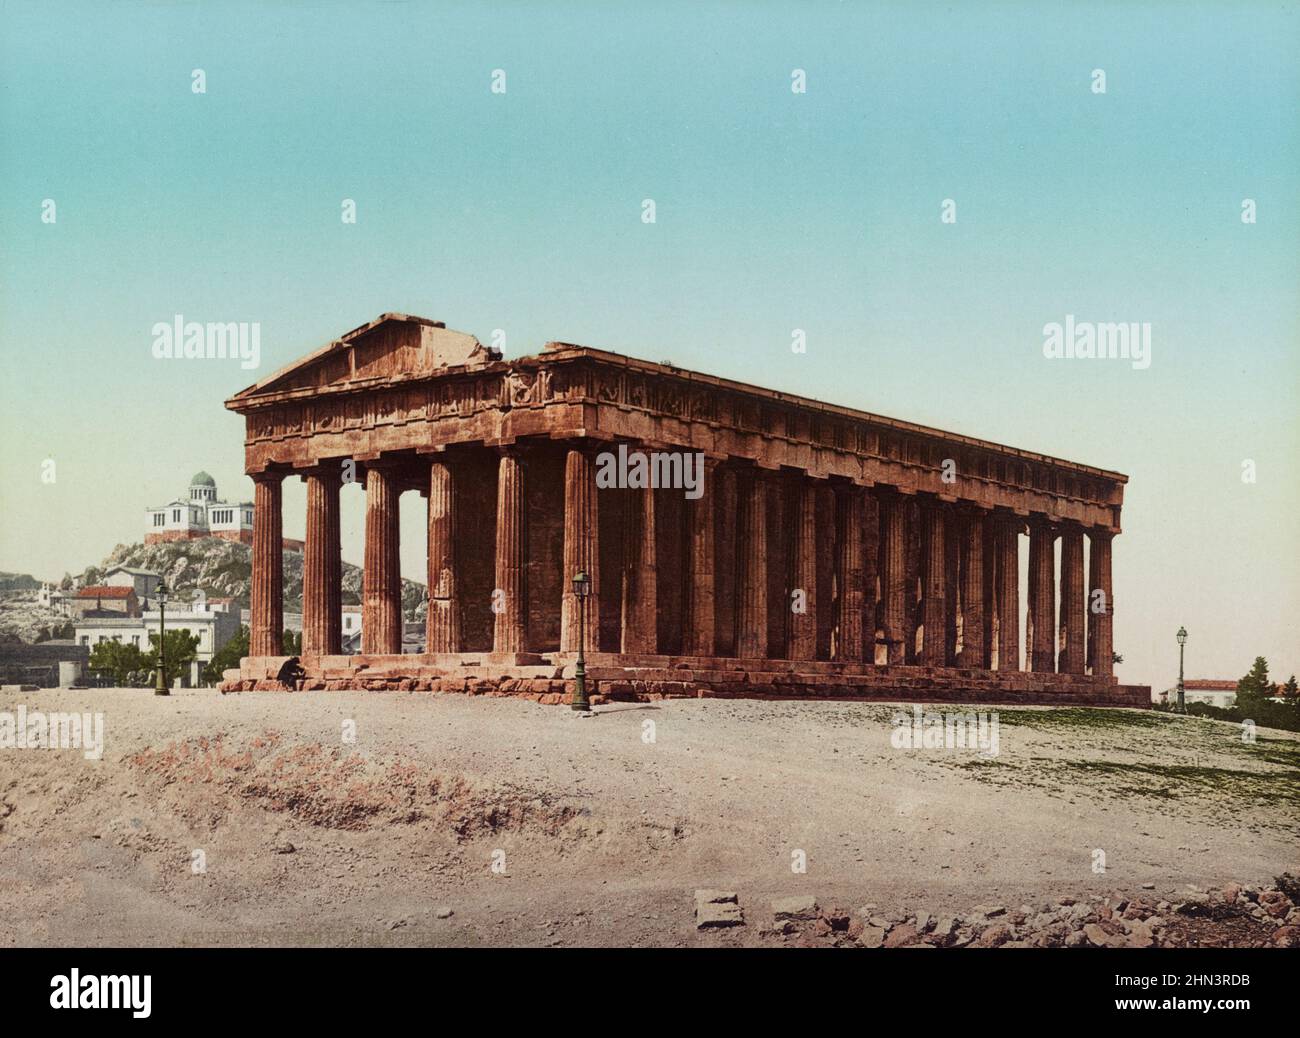 Carte postale couleur vintage du Temple d'Hephaestus (Hephaisteion). 19th siècle. Le Temple d'Hephaestus ou Hephaisteion (anciennement appelé par erreur le Th Banque D'Images